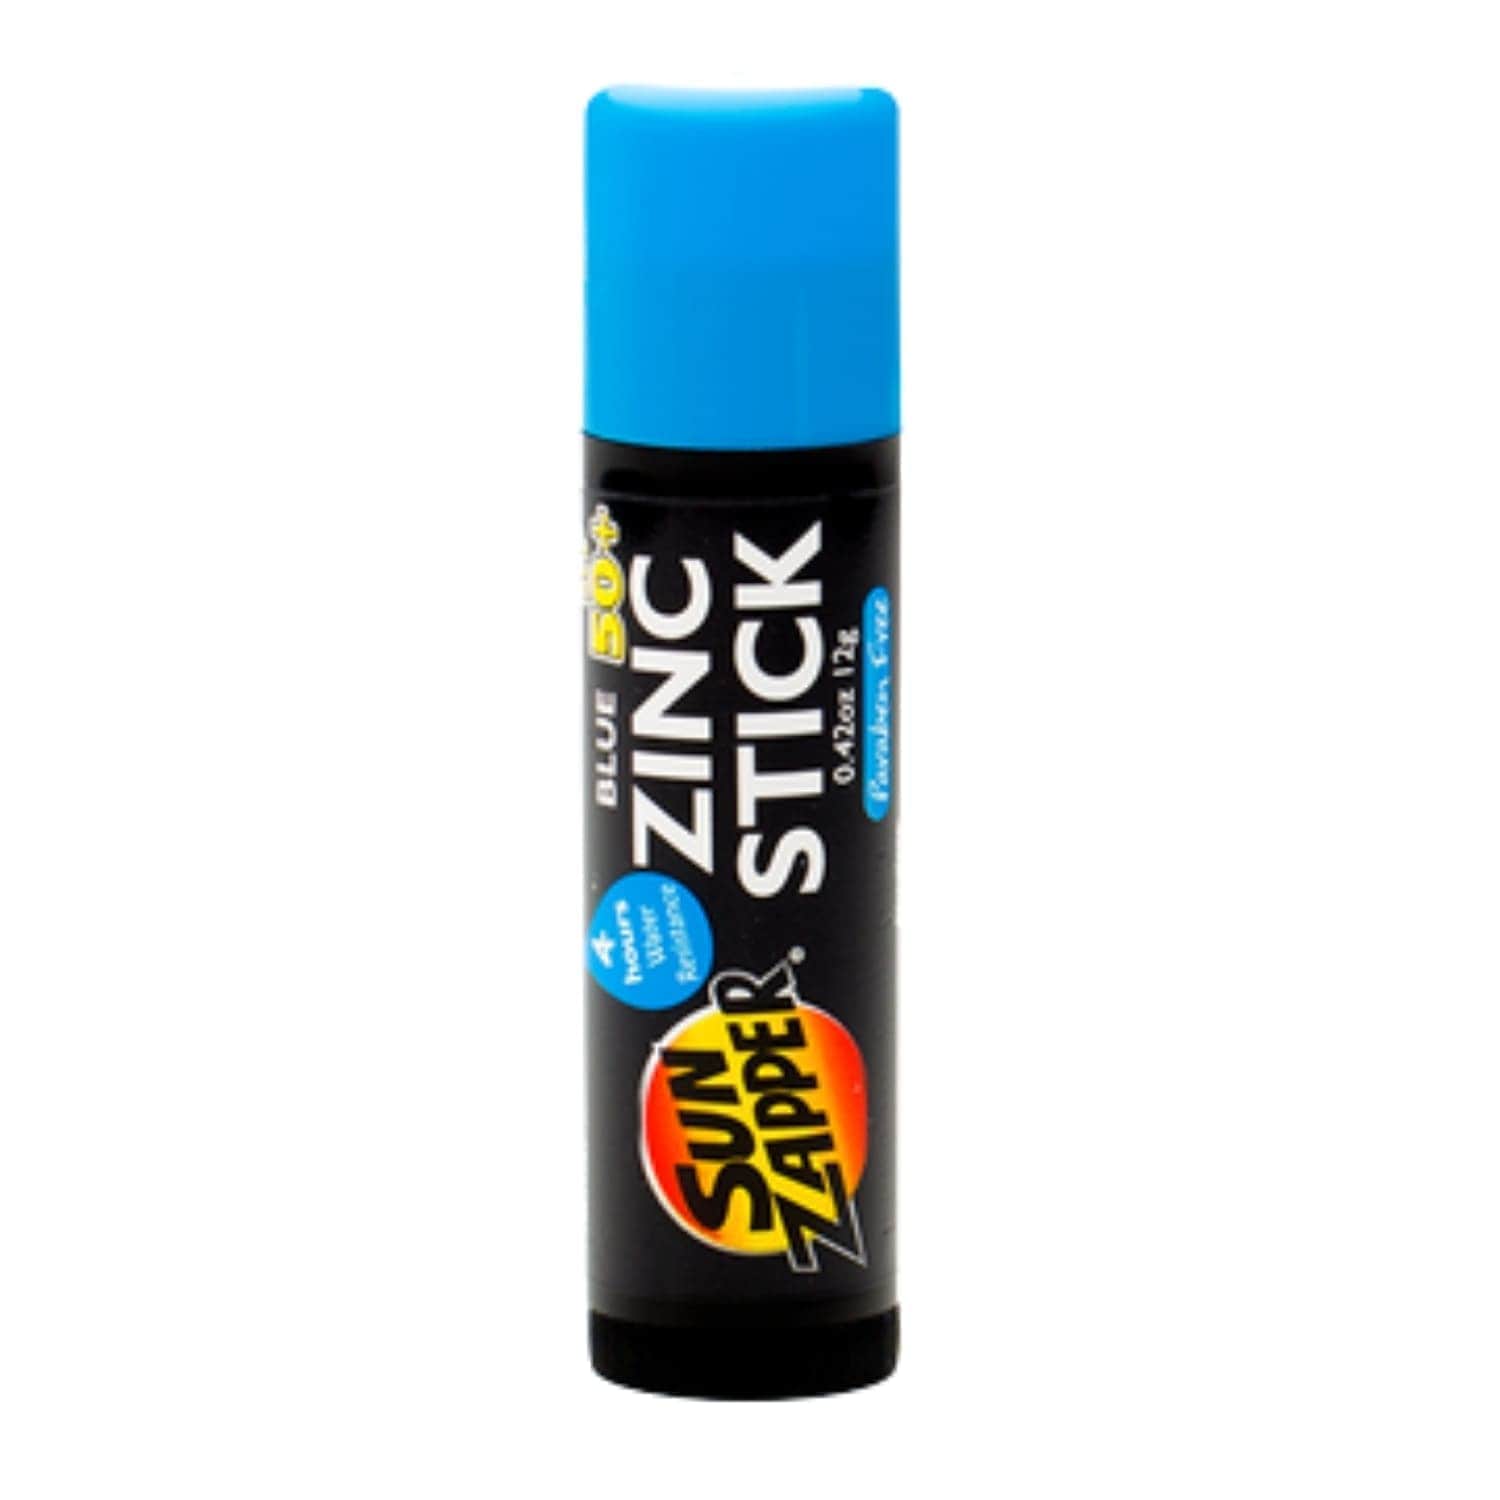 Sun Zapper Coloured SPF 50+ Zinc Stick - Blue - 12g - Sunscreen by Sun Zapper 12g